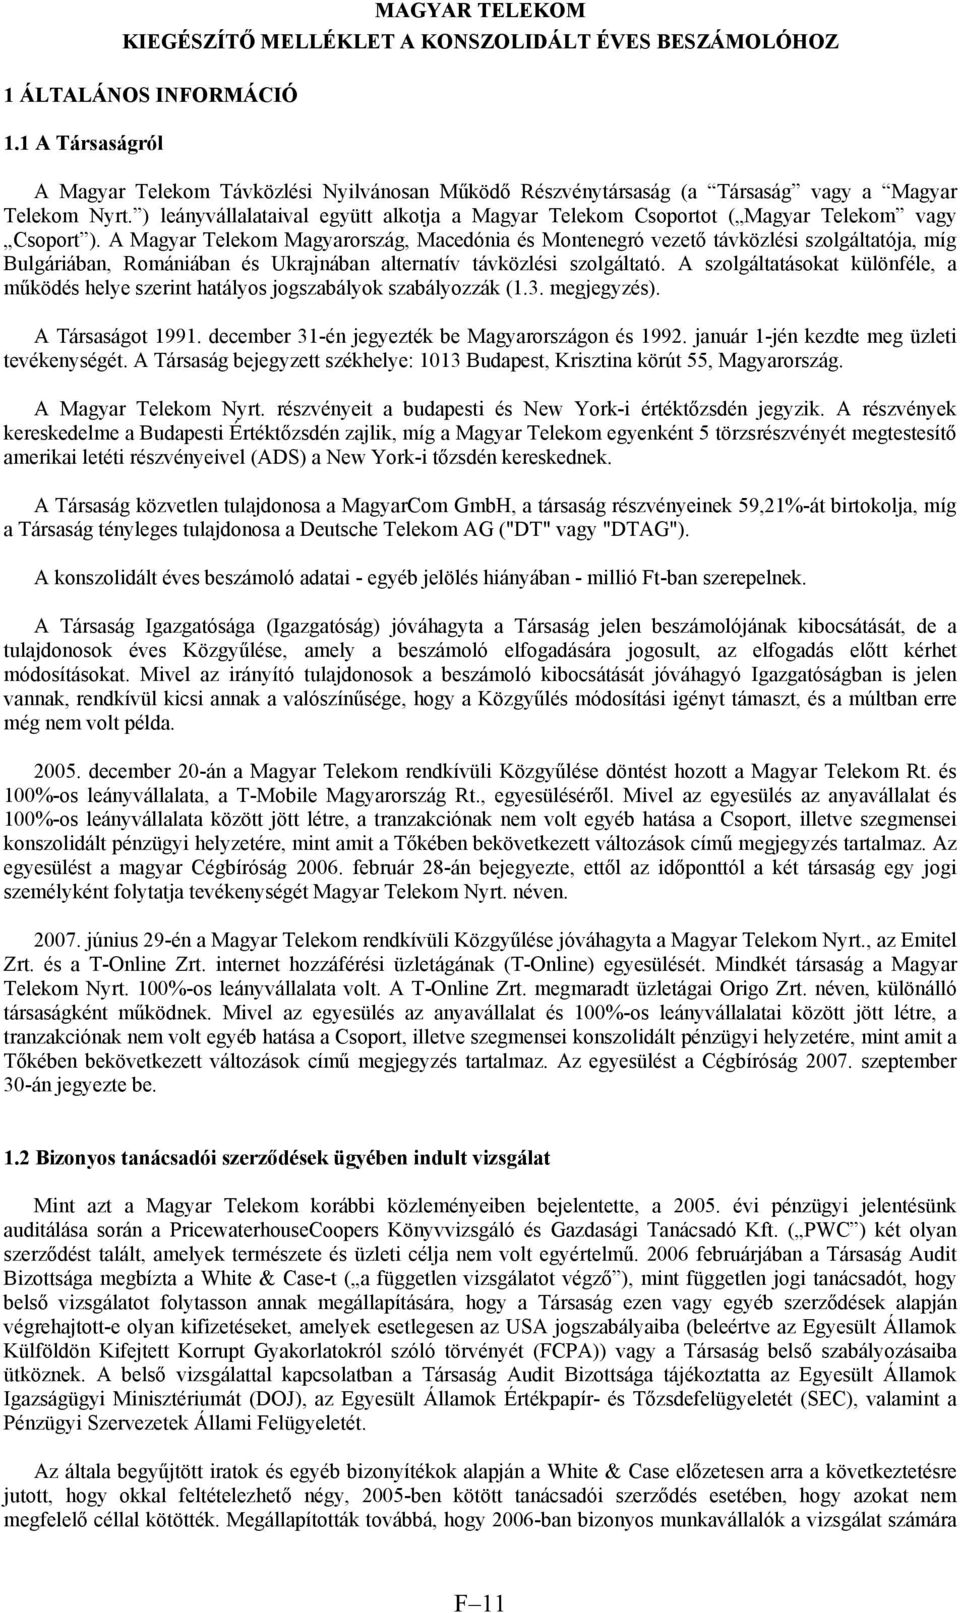 A Magyar Telekom Magyarország, Macedónia és Montenegró vezető távközlési szolgáltatója, míg Bulgáriában, Romániában és Ukrajnában alternatív távközlési szolgáltató.